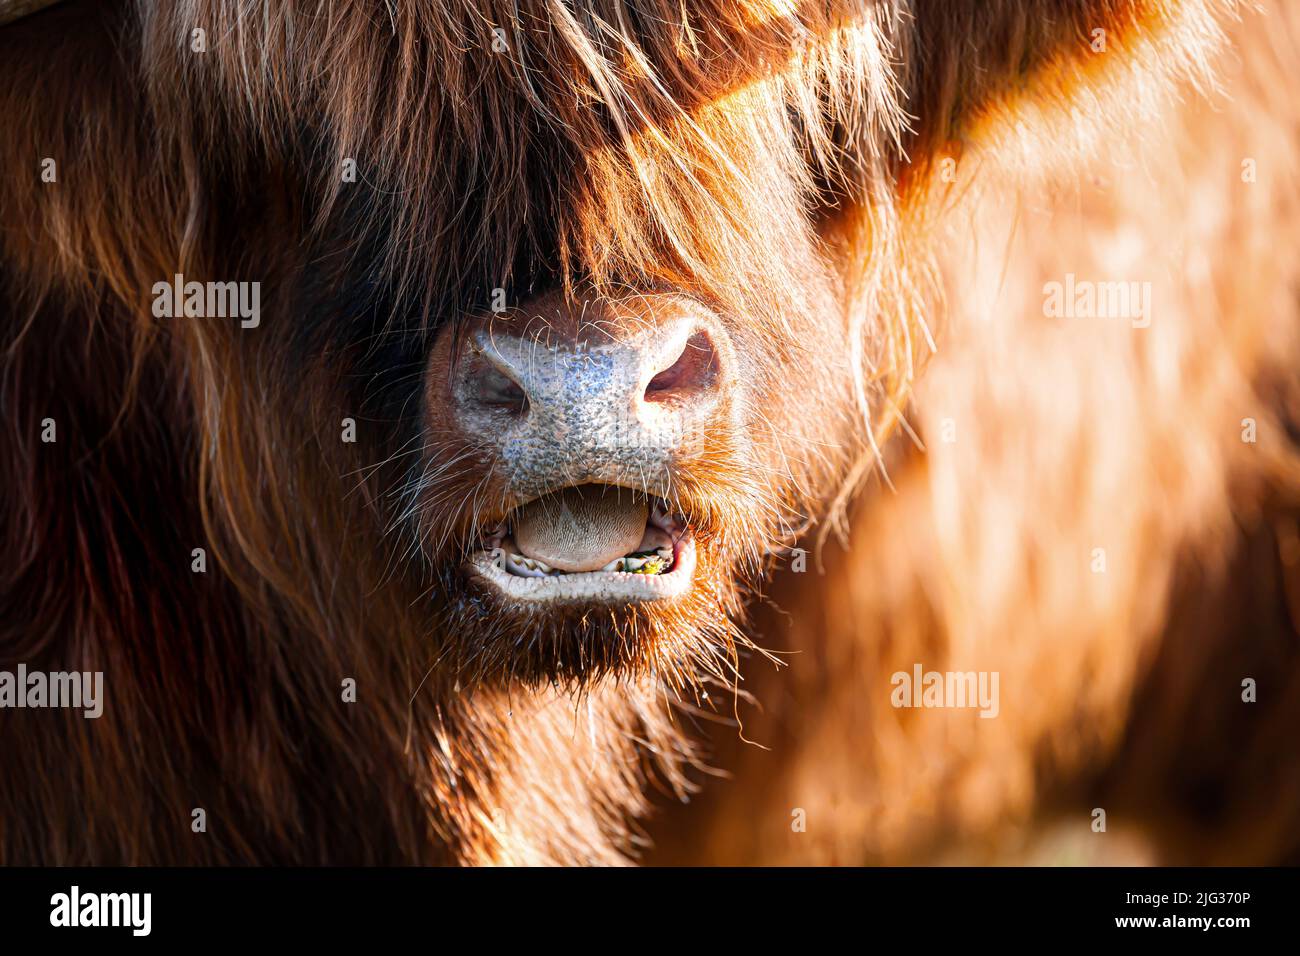 Il toro della mucca delle Highland si trova a faccia ravvicinata con la bocca aperta, mostrando denti e lingua Foto Stock